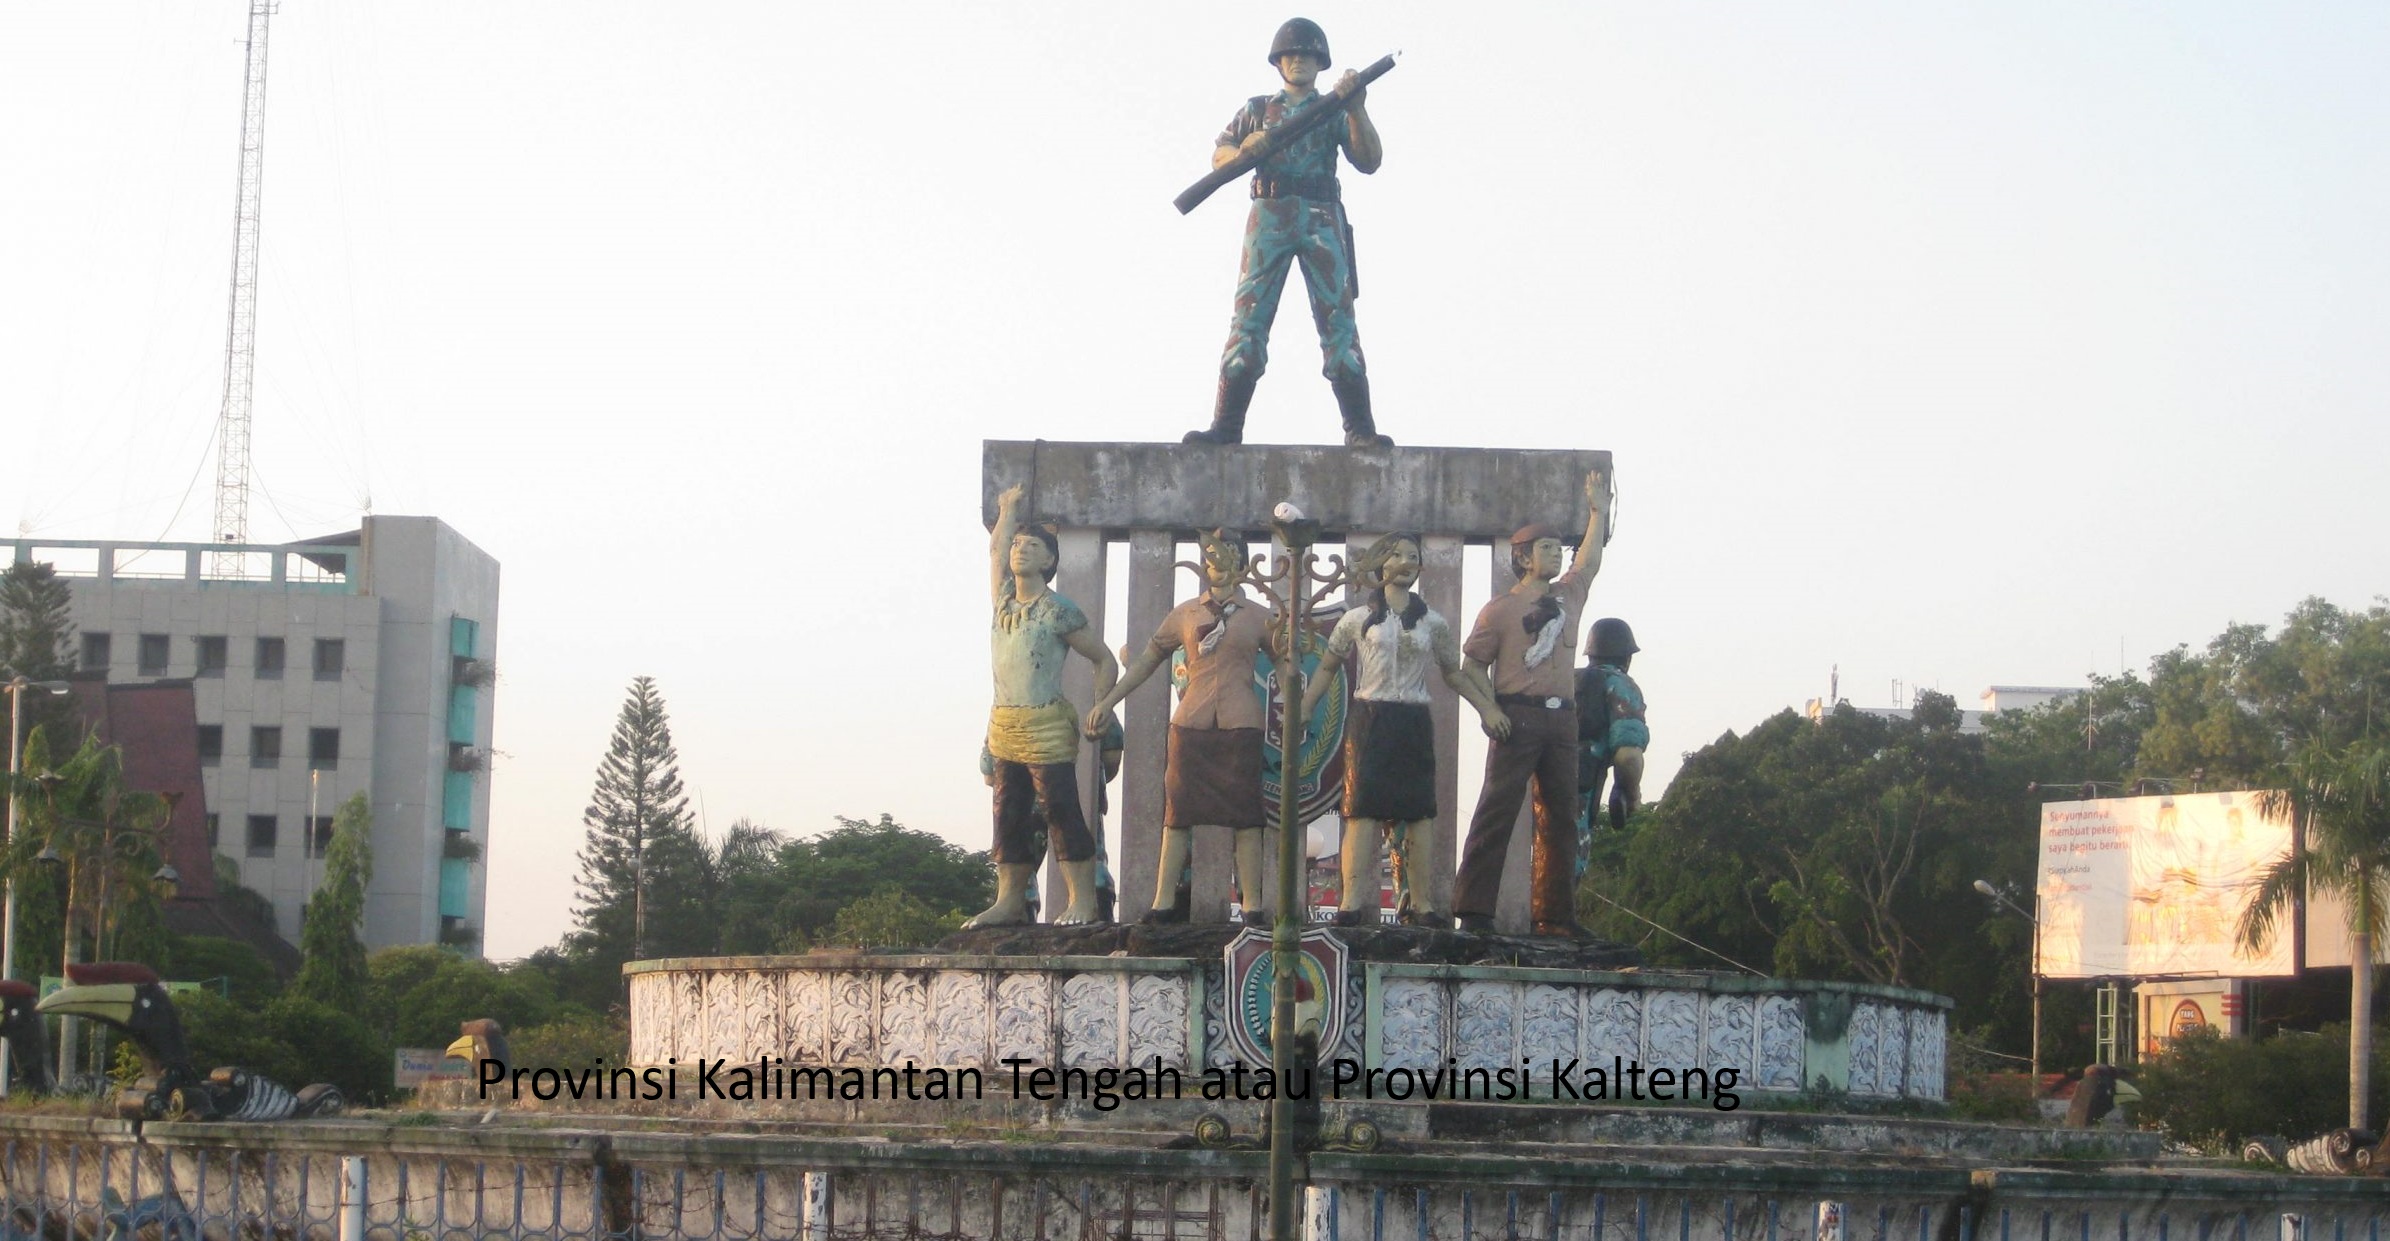 Sejarah Panjang dan Pembentukan Provinsi Kalimantan Tengah